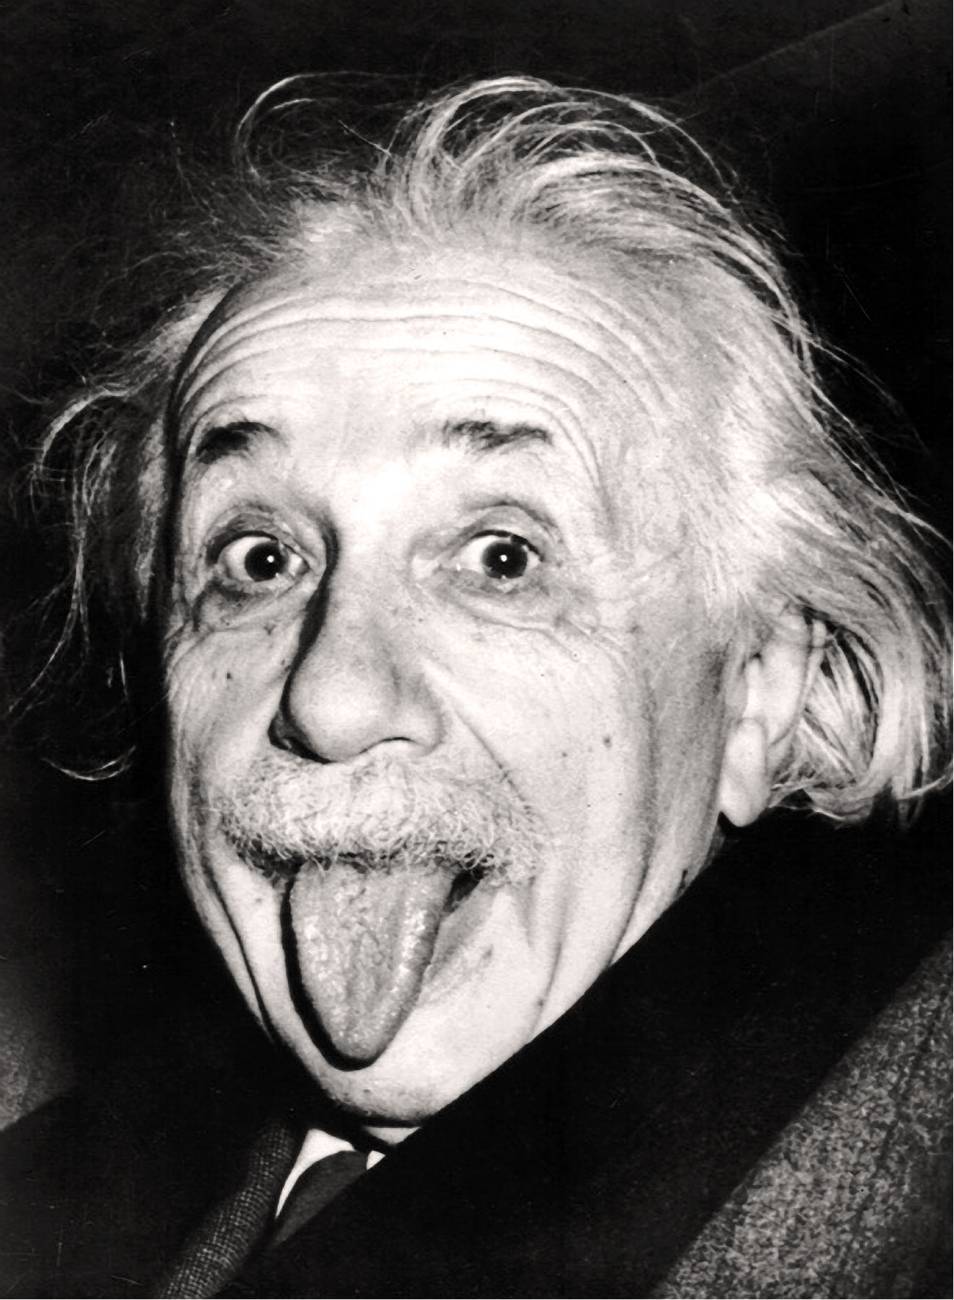  Albert Einstein Hintergrundbild 954x1300. Mobile wallpaper: Albert Einstein, Funny, Men, People, 4022 download the picture for free